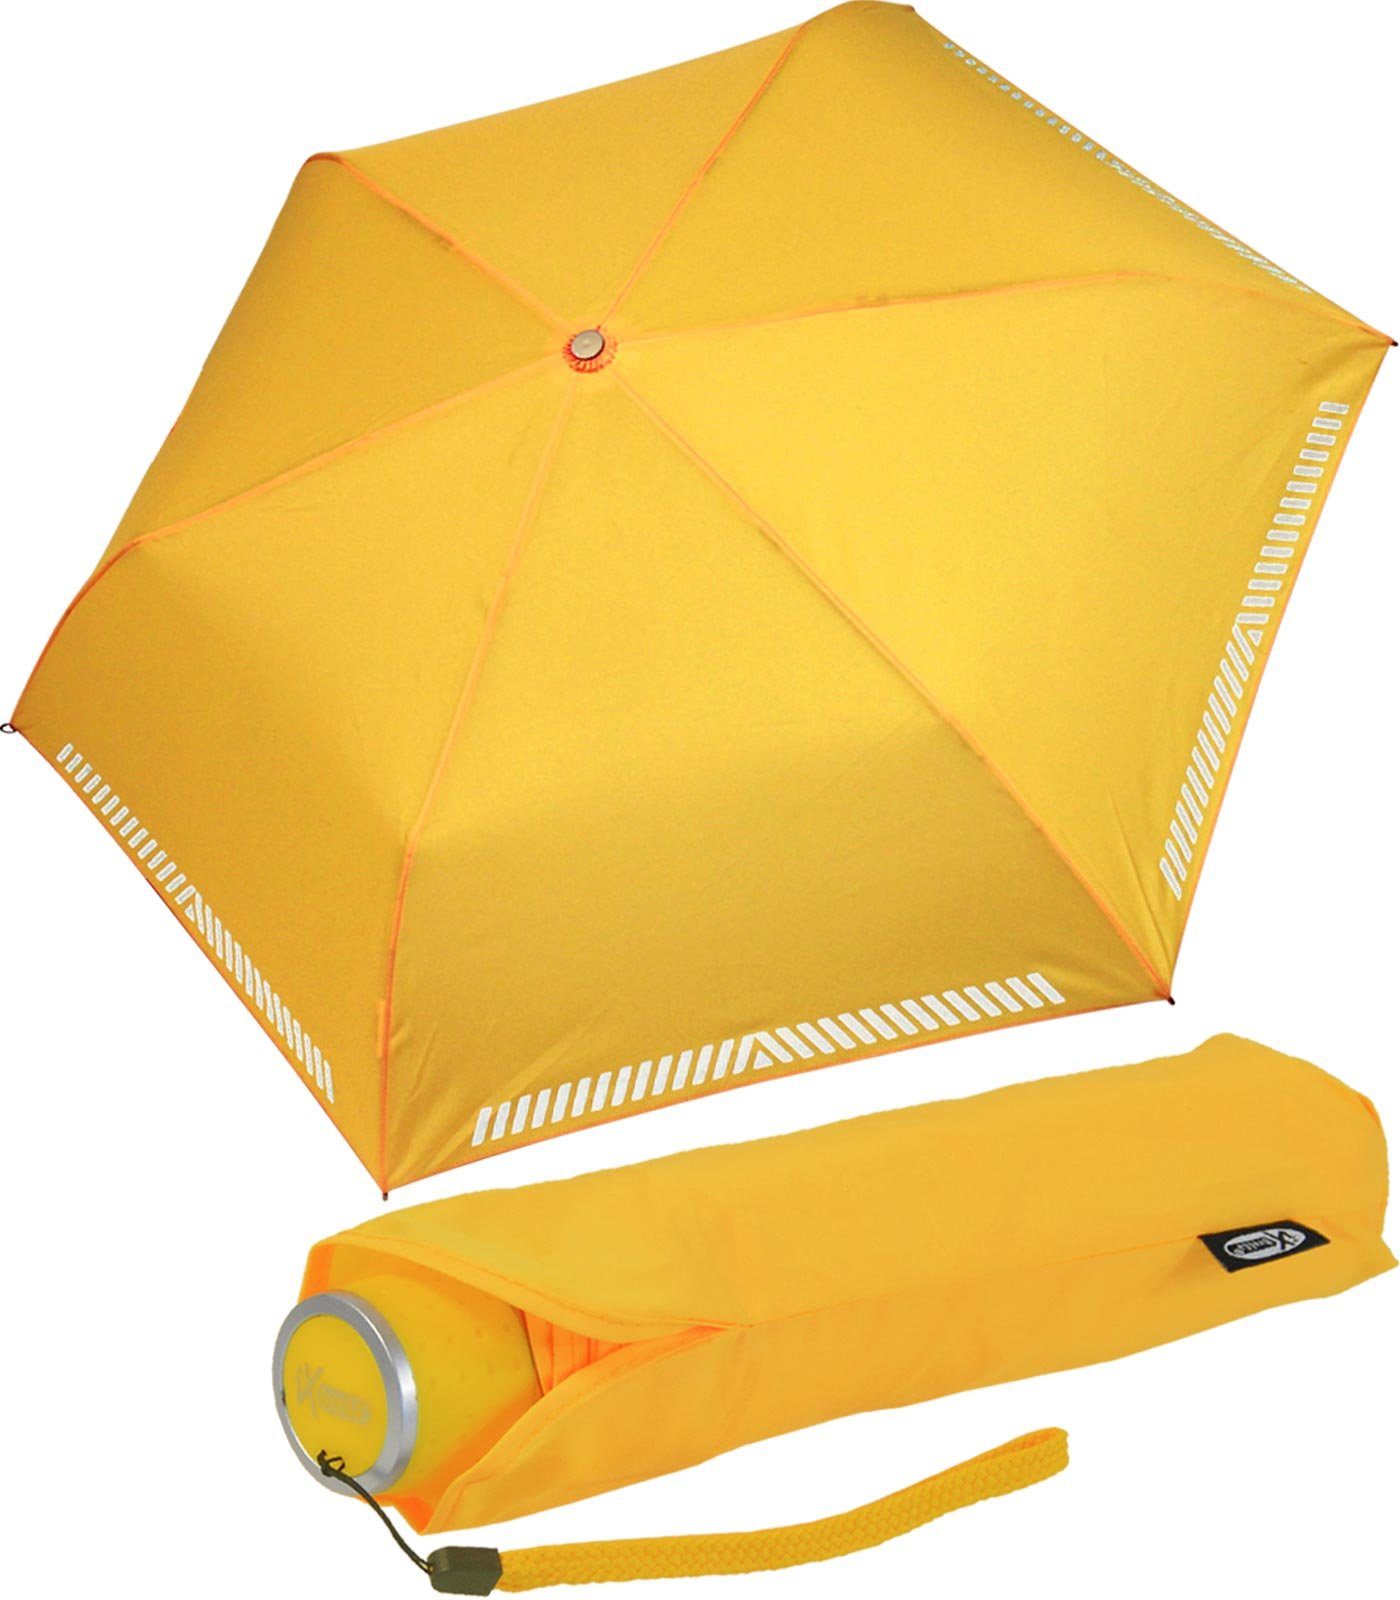 iX-brella Taschenregenschirm Mini Kinderschirm Safety Reflex extra leicht, reflektierend neon-gelb